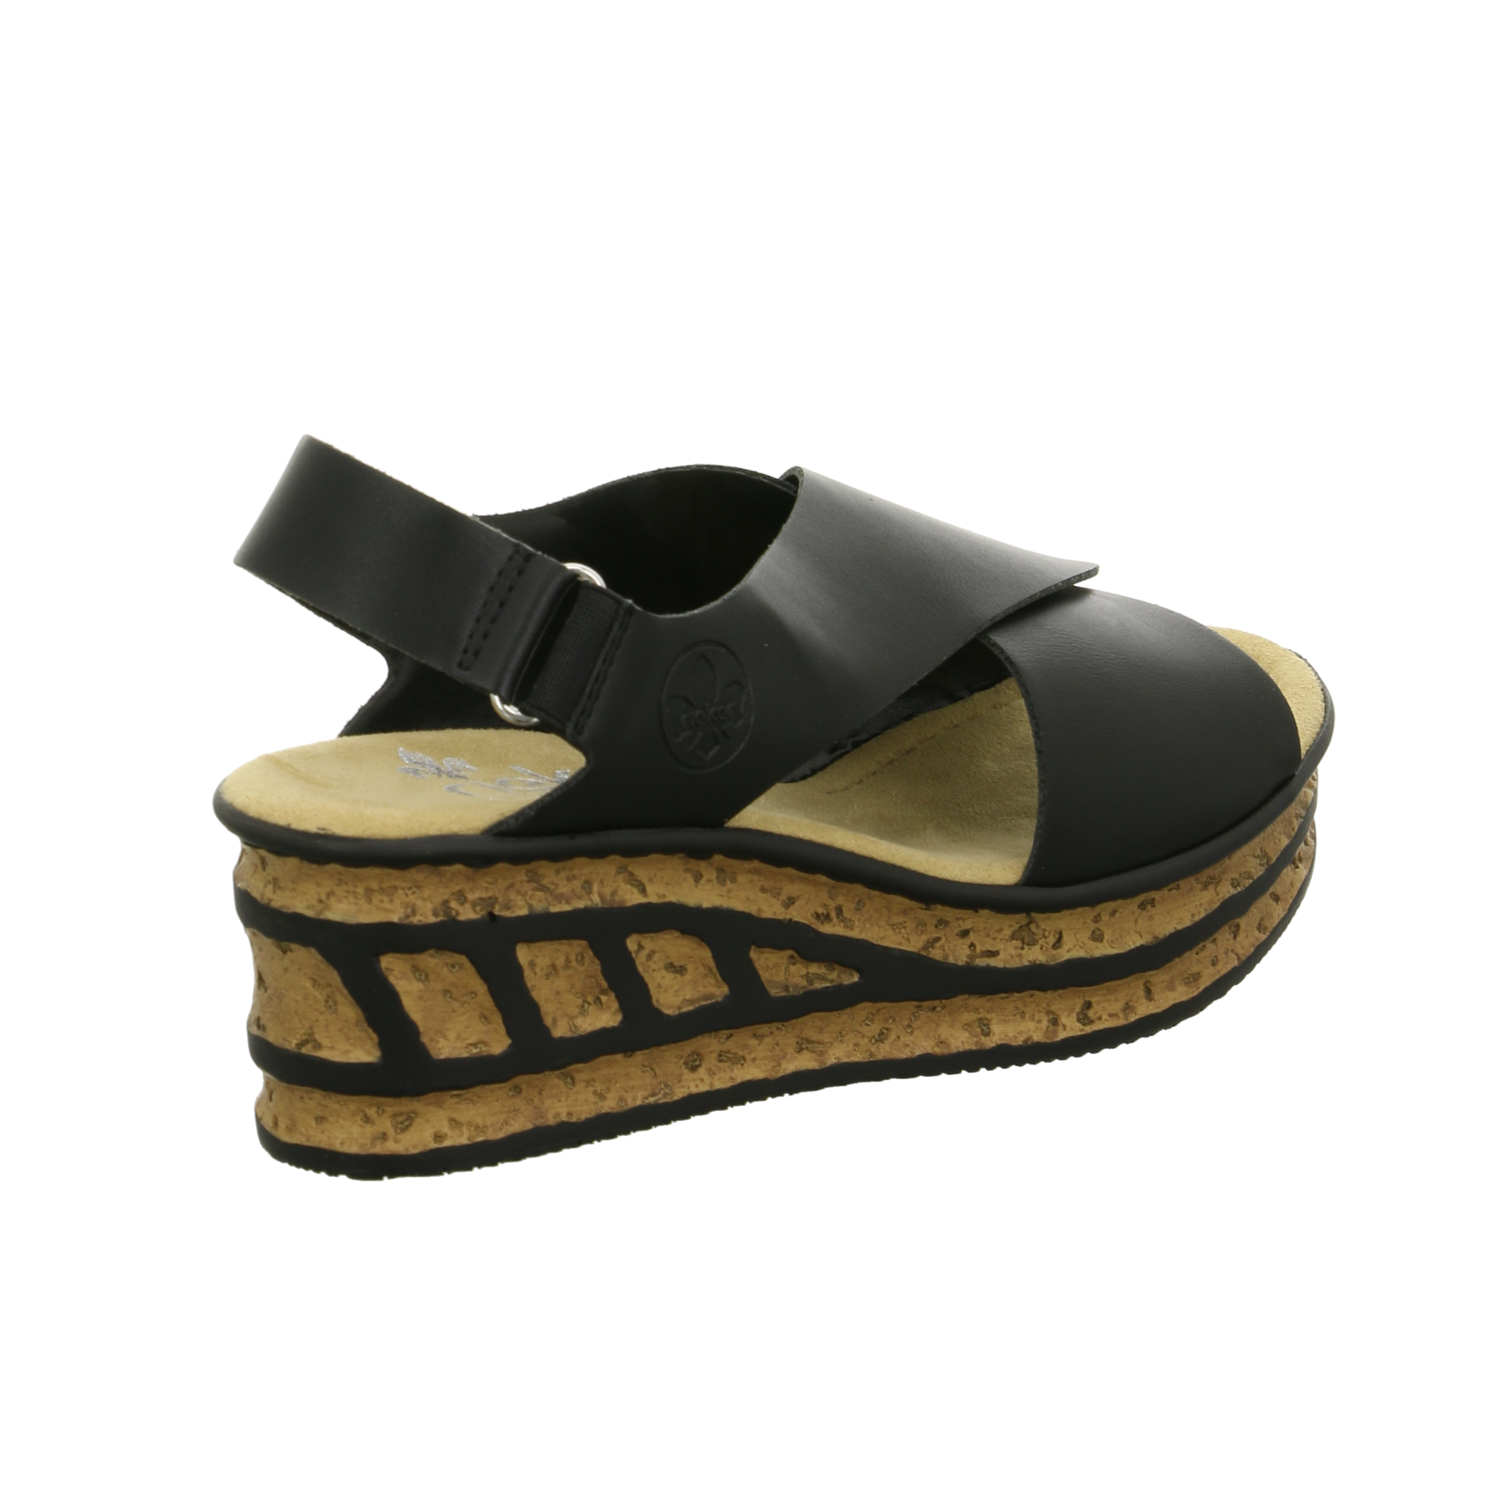 Rieker Sandalette bis 45 mm schwarz